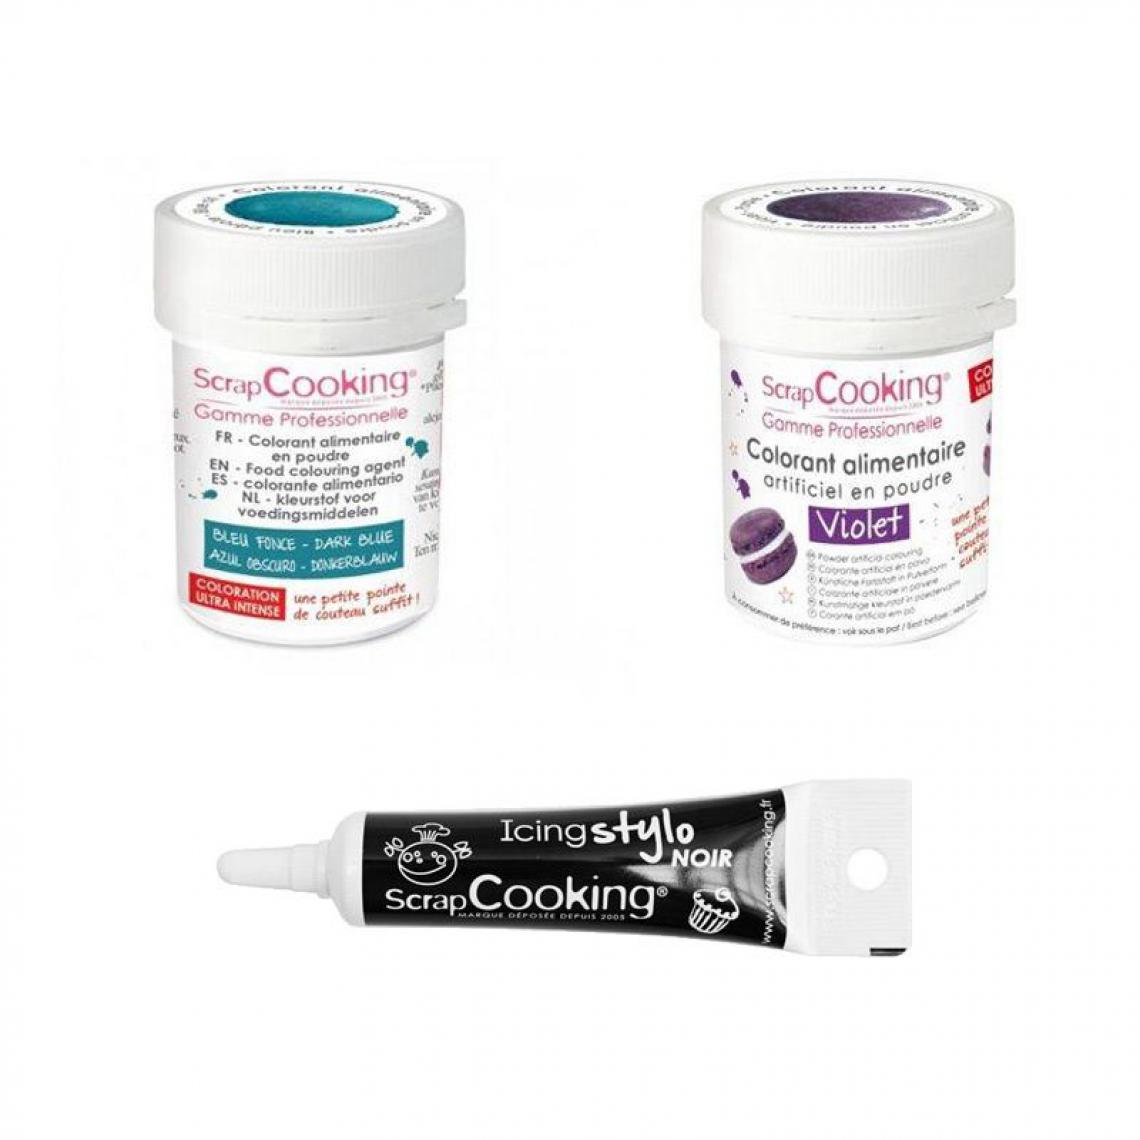 Scrapcooking - 2 colorants alimentaires violet-bleu foncé + Stylo glaçage noir - Kits créatifs